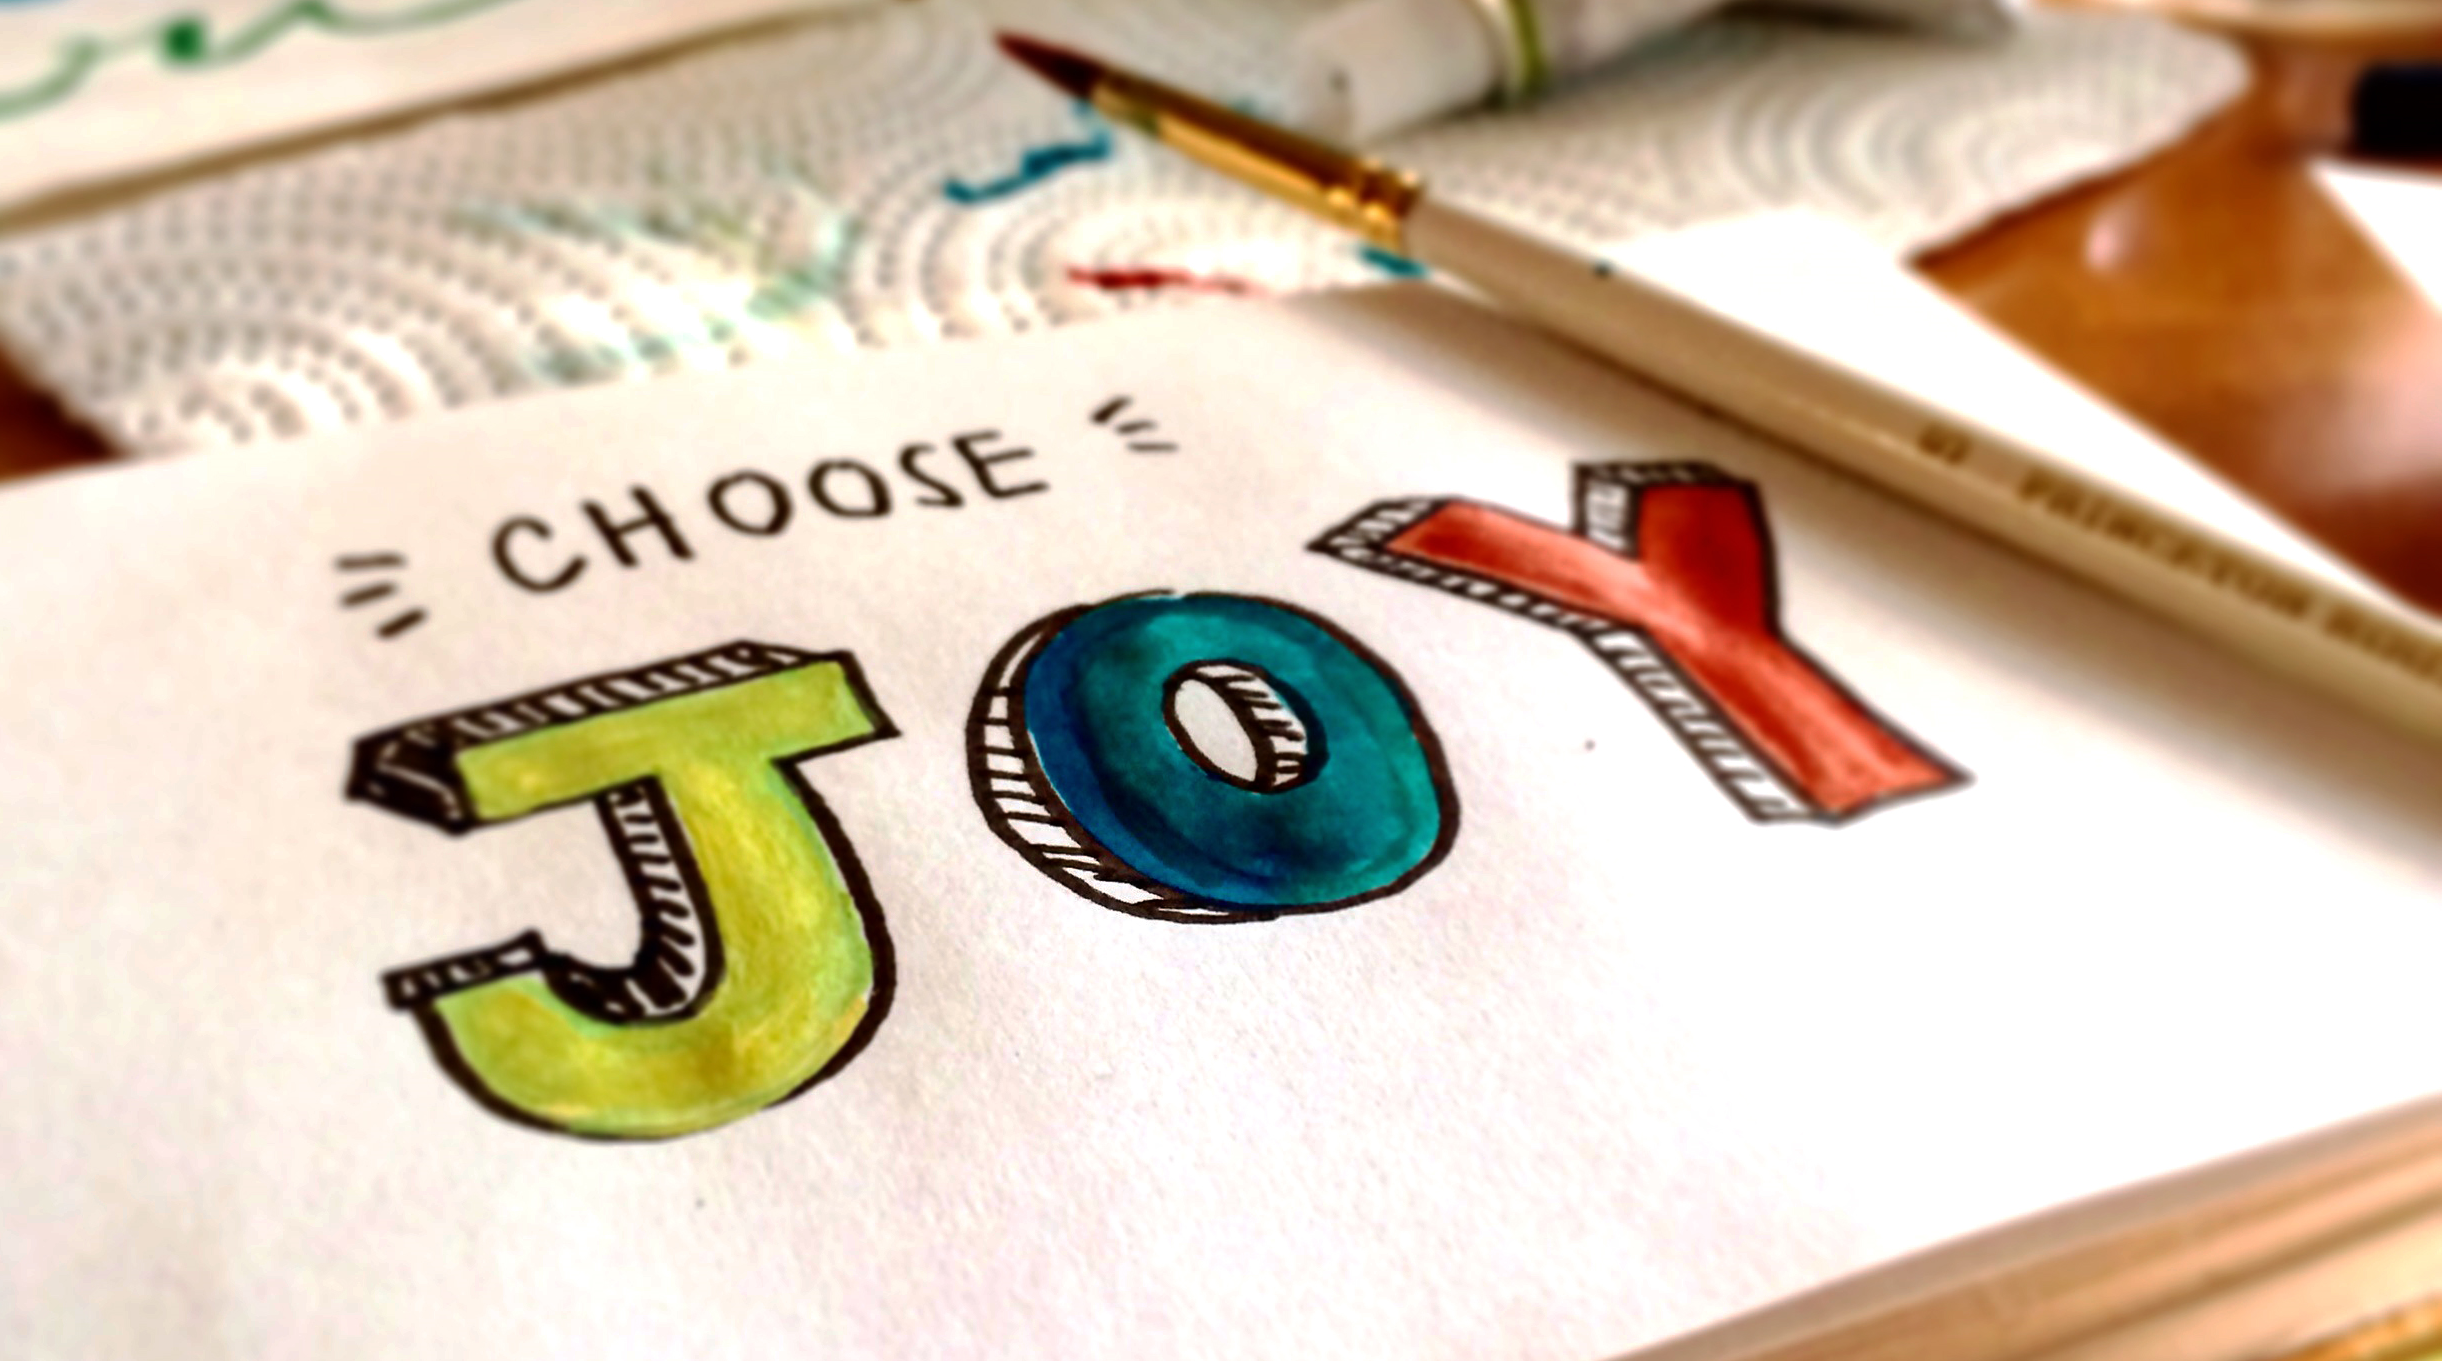 Papper med målad text "Choose Joy"